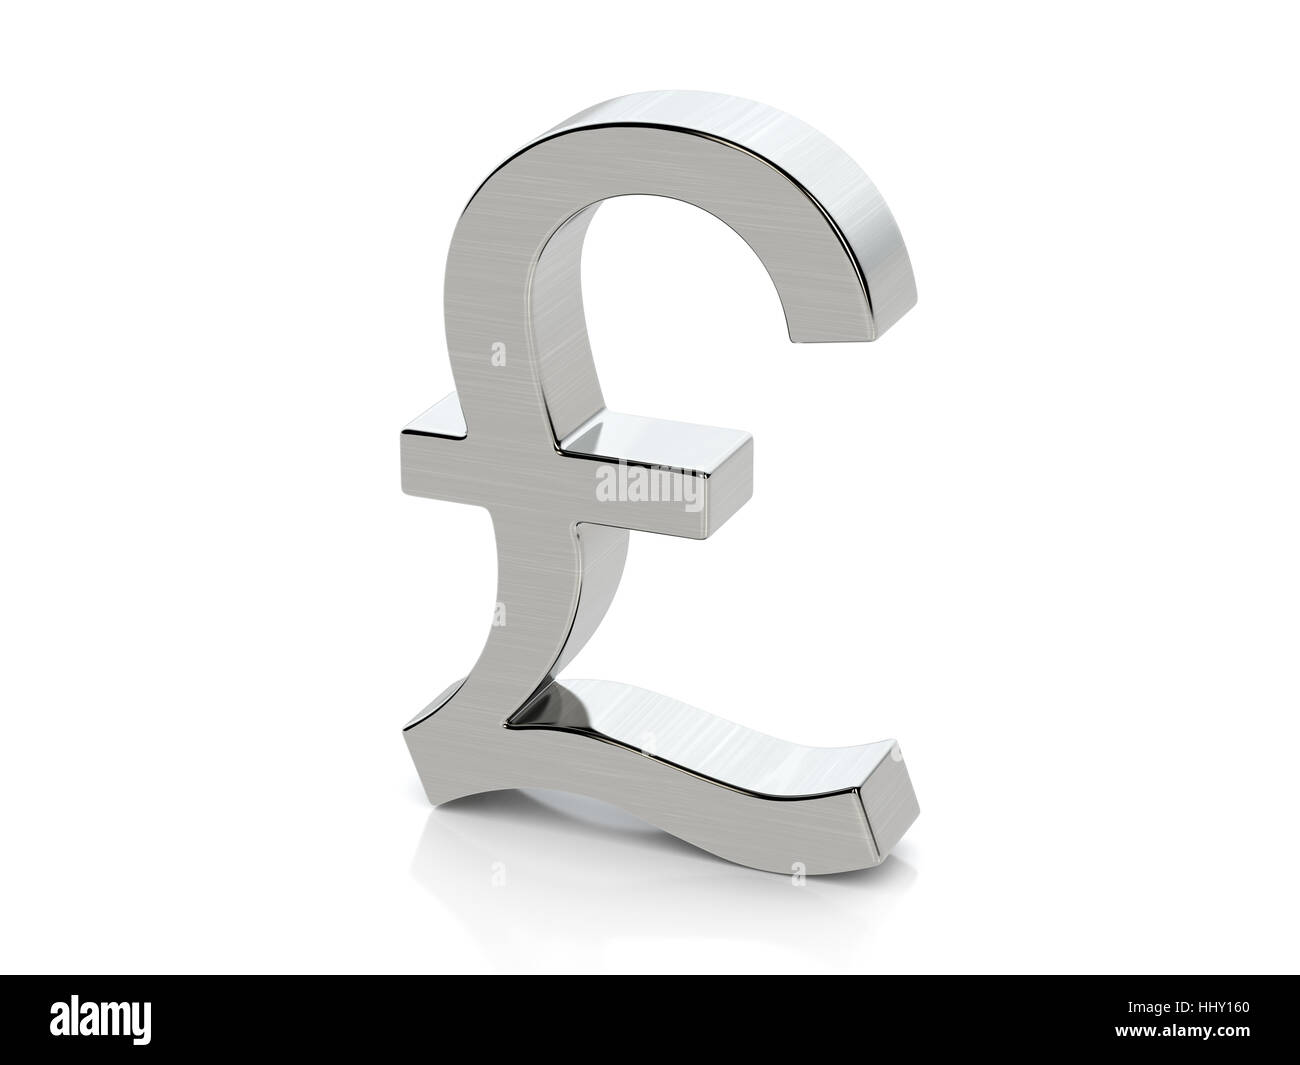 Metallic pound symbol on a white background. Stock Photo